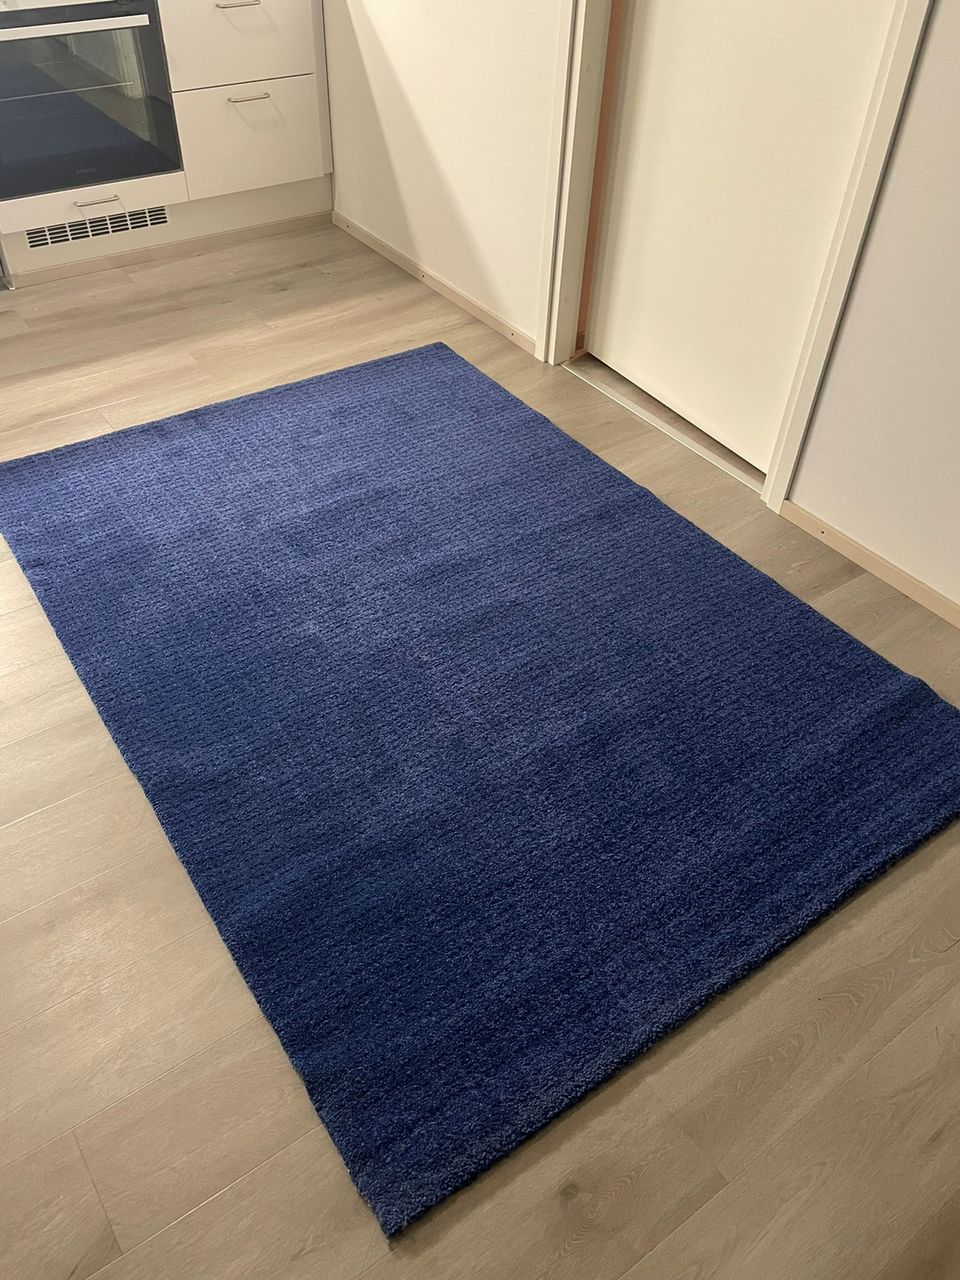 Myydään 2kpl Ikean ”Langsted” mattoa